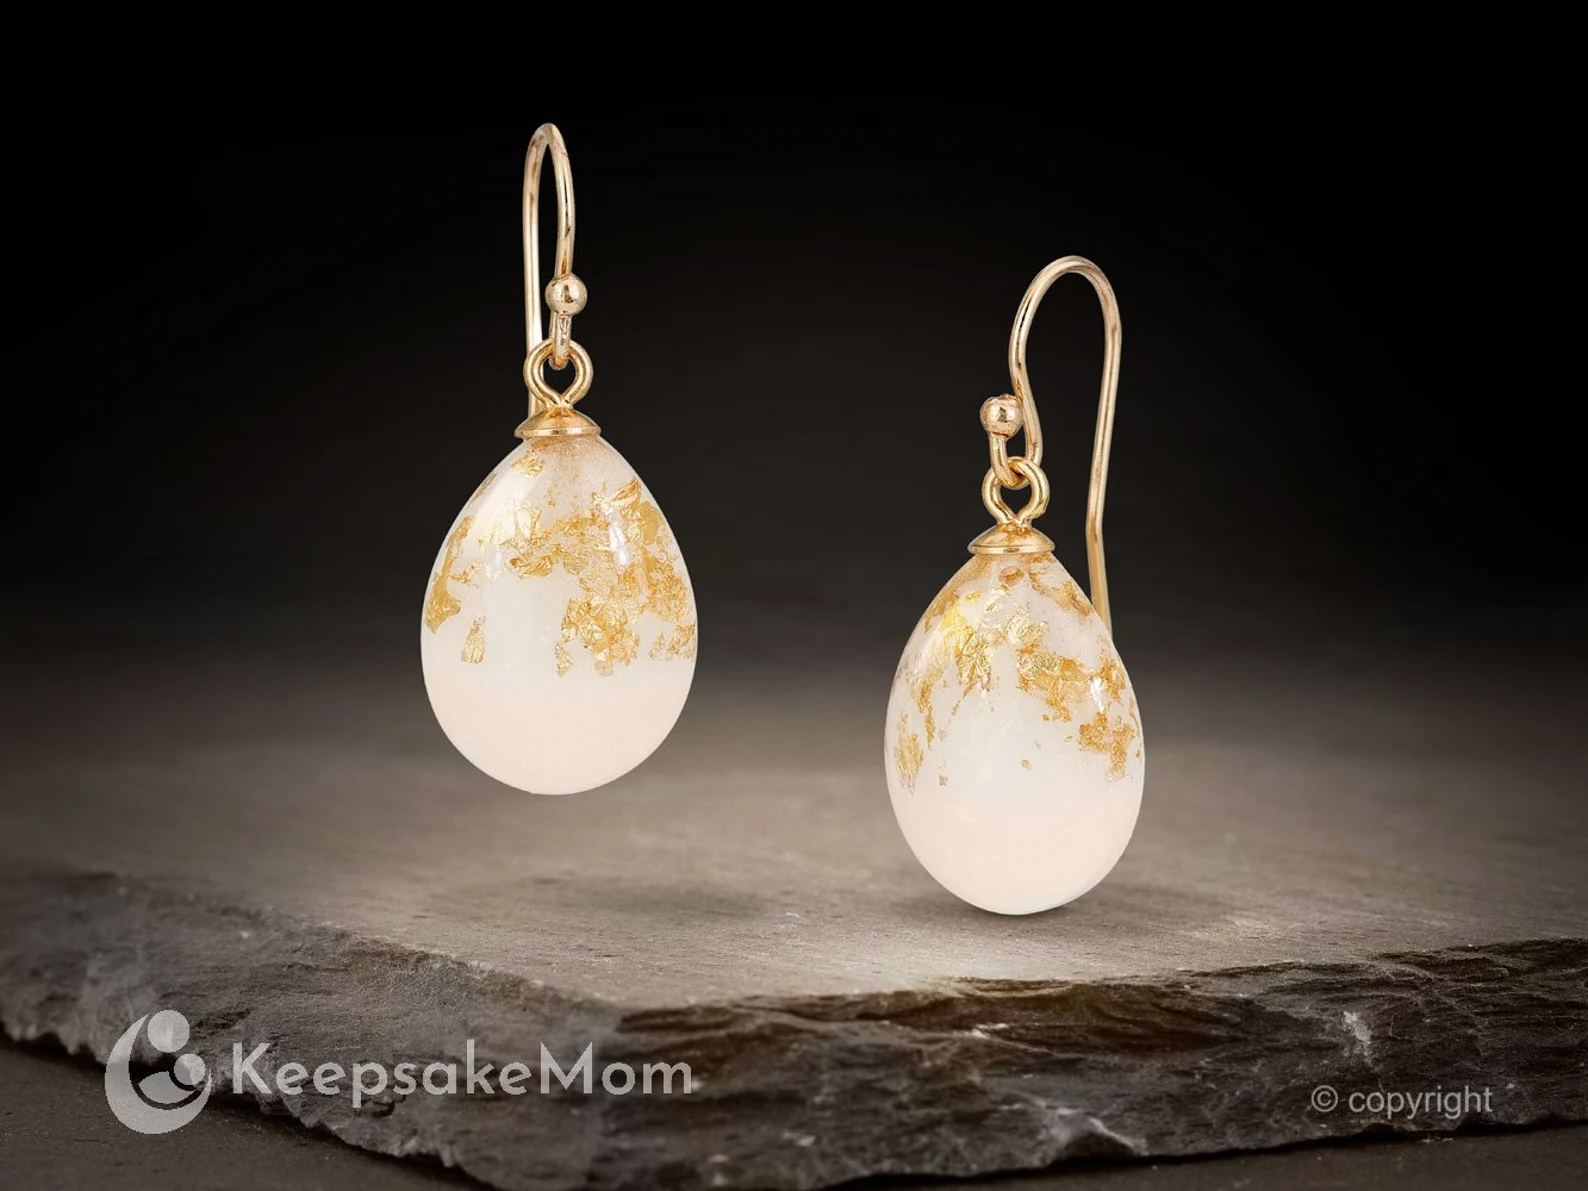 breastmilk jewelry drop or teardrop shaped hooks earrings KeepsakeMom gold